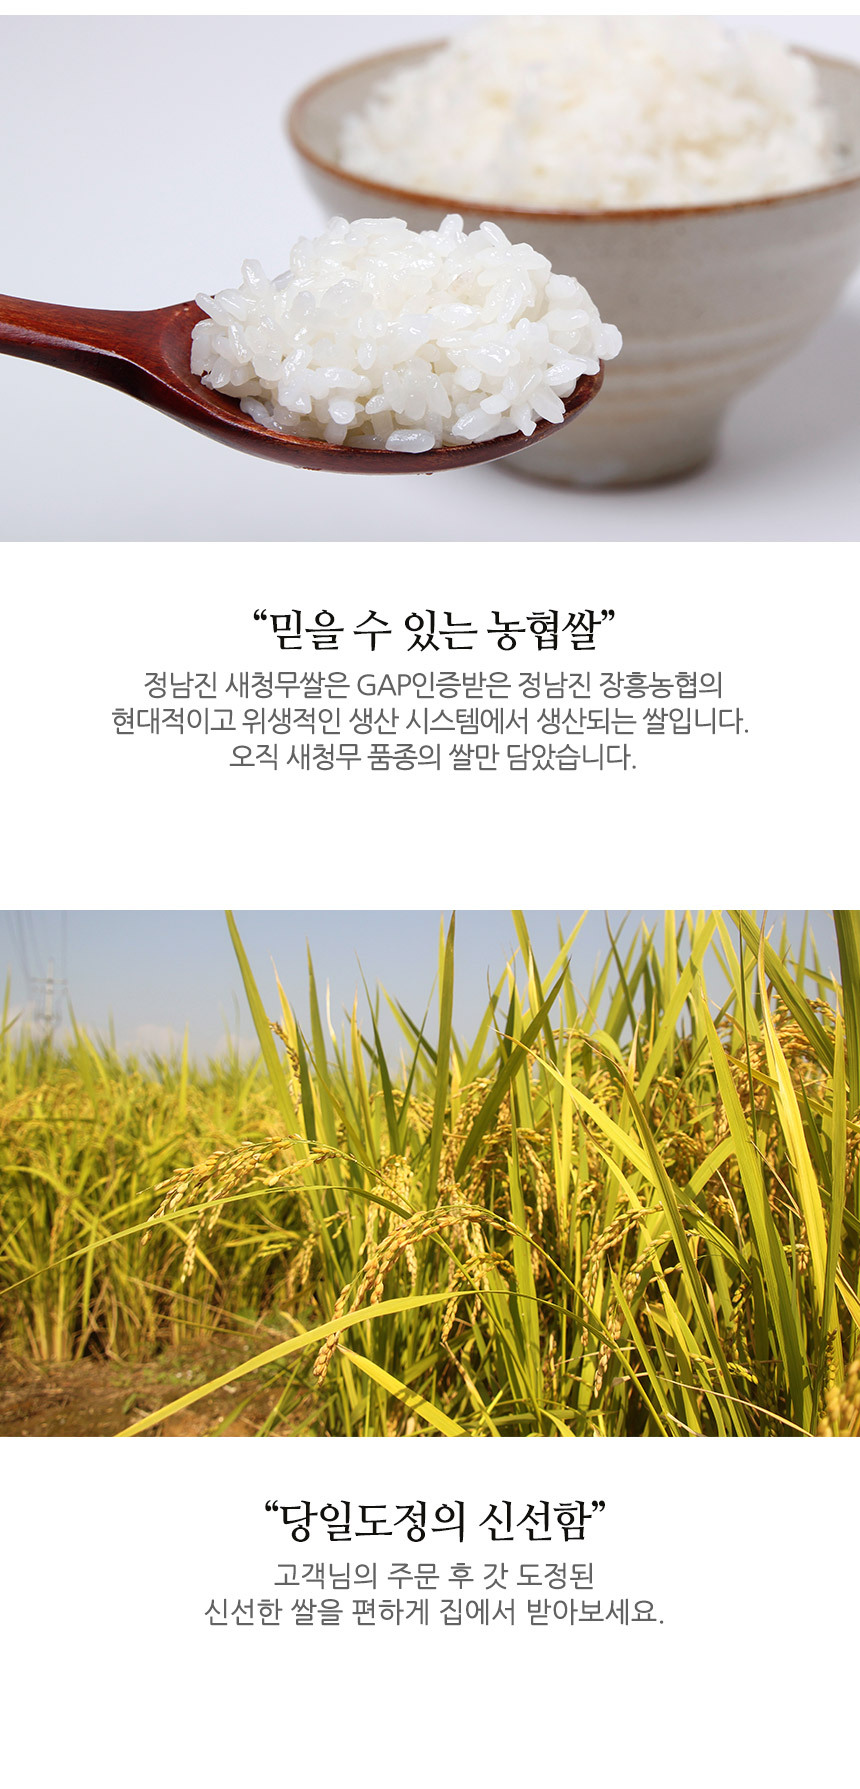 韓國食品-[NH] Sae Chung Mu 韓國米 4kg